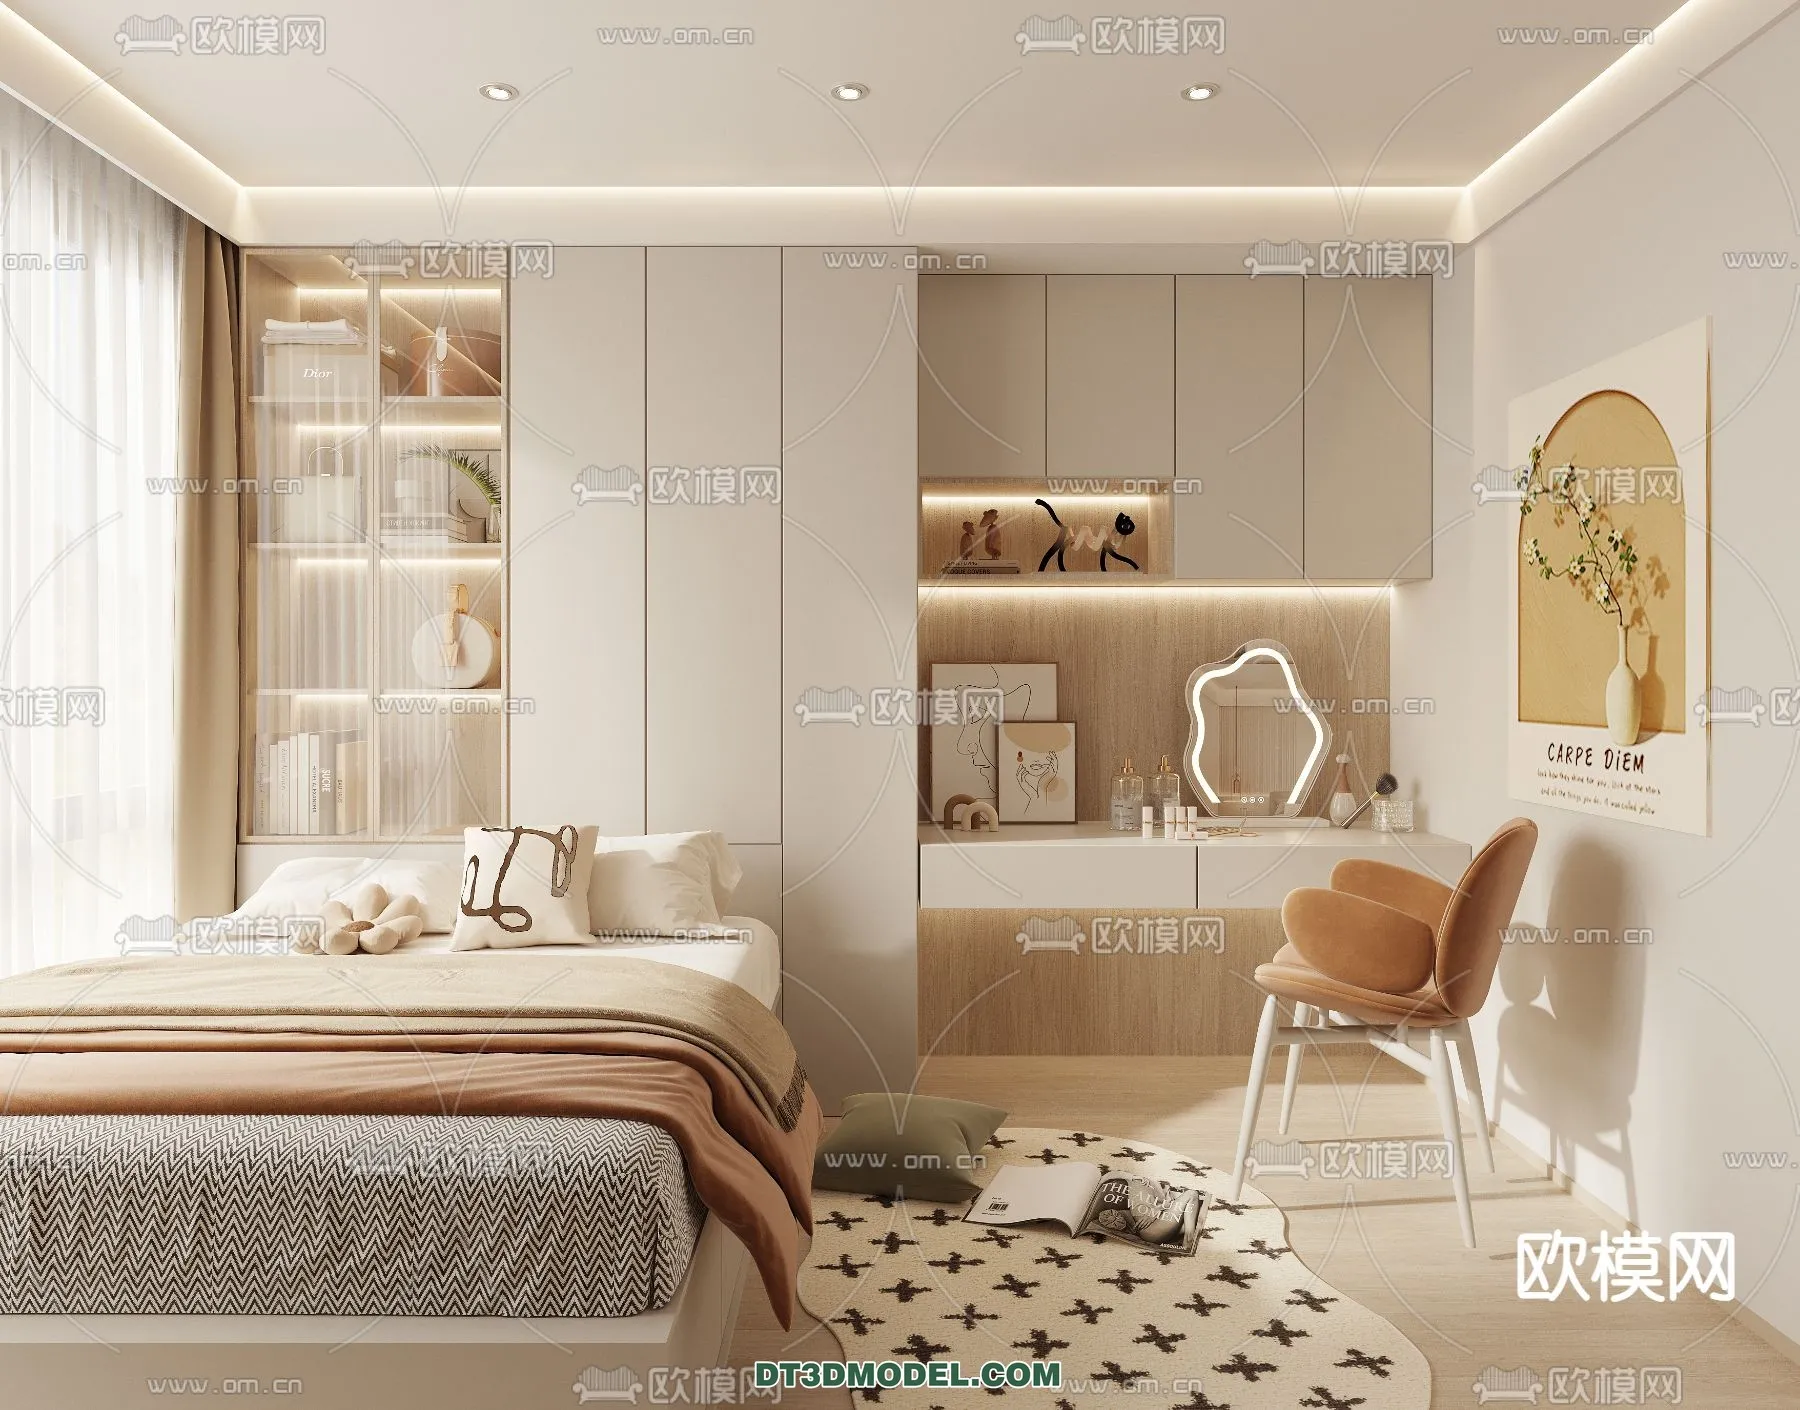 Tatami Bedroom – Japan Bedroom – 3D Scene – 047